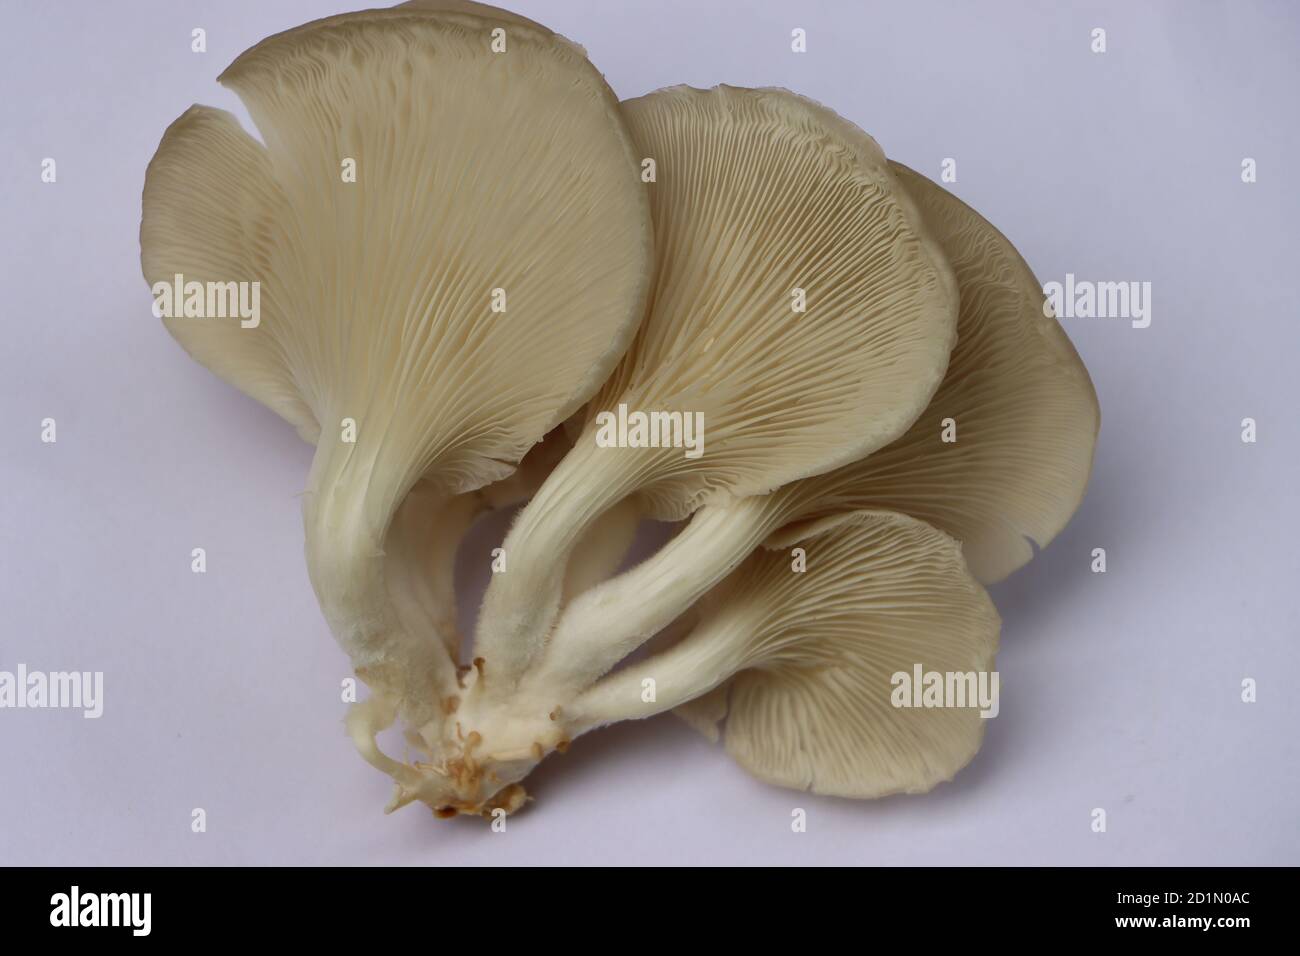 Oyster mushroom or Pleurotus mushroom on white background Stock Photo